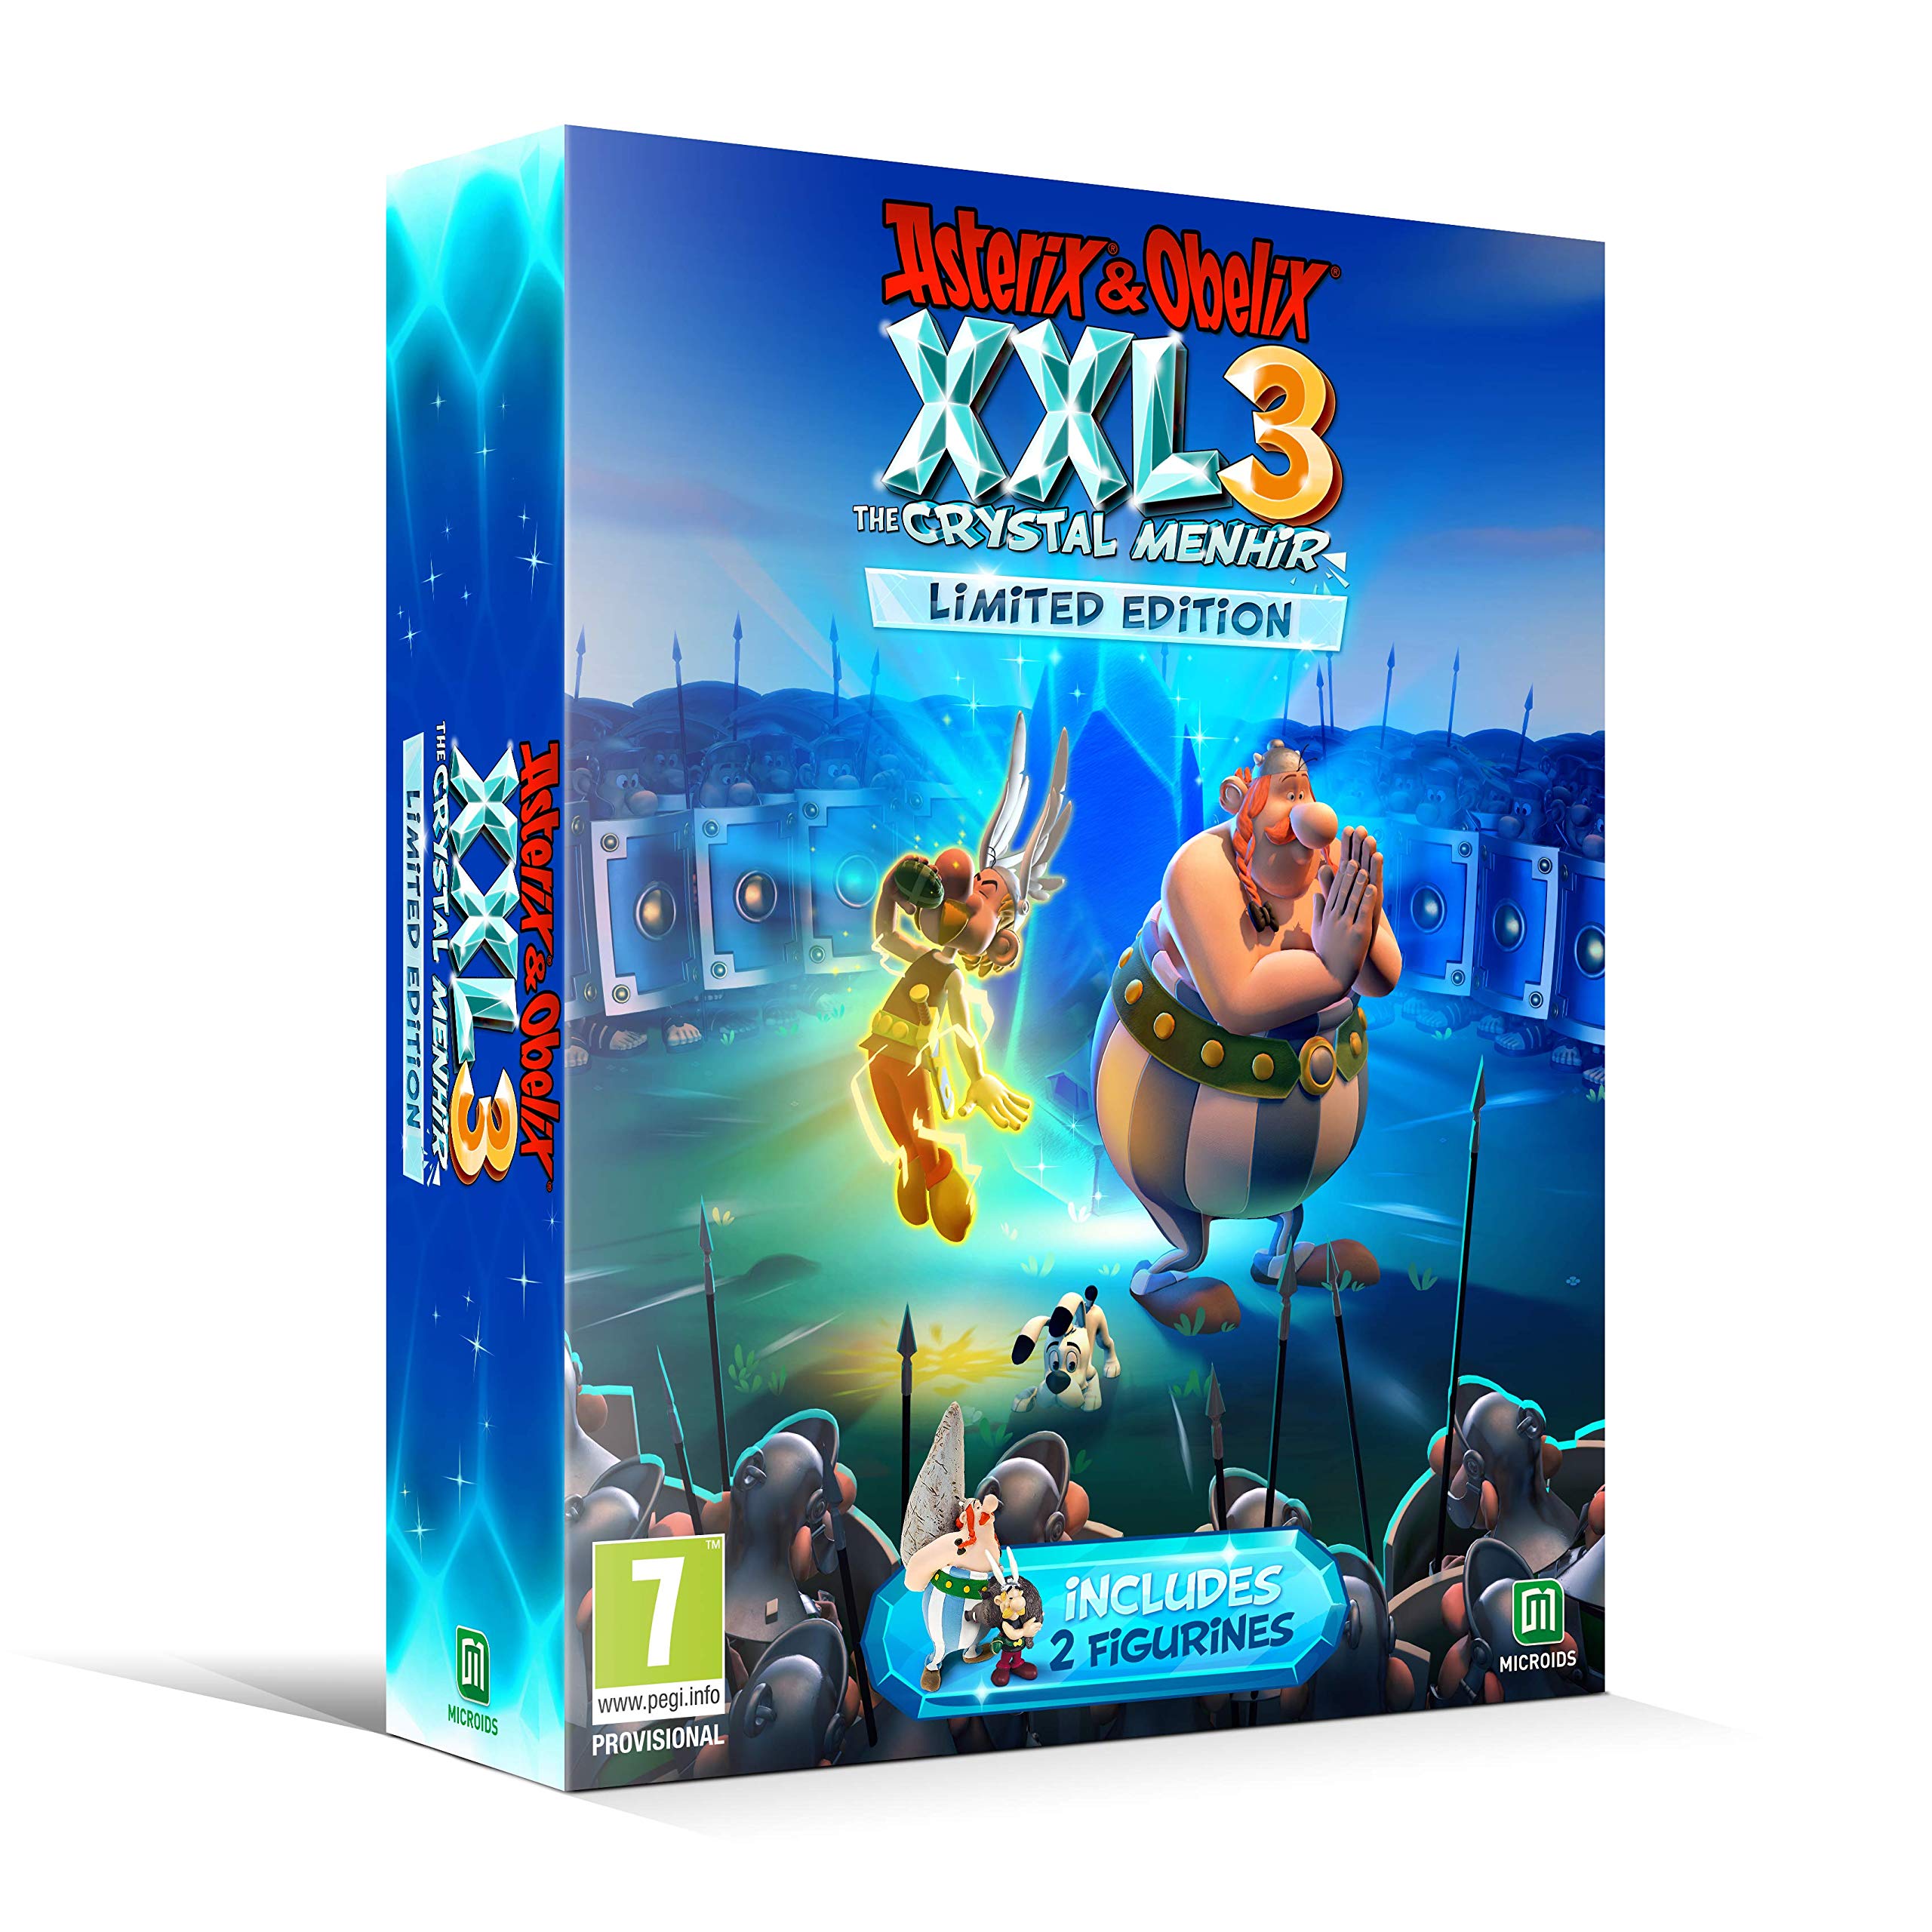 Asterix and Obelix XXL 3 The Crystal Menhir Limited Edition - PlayStation 4 Játékok